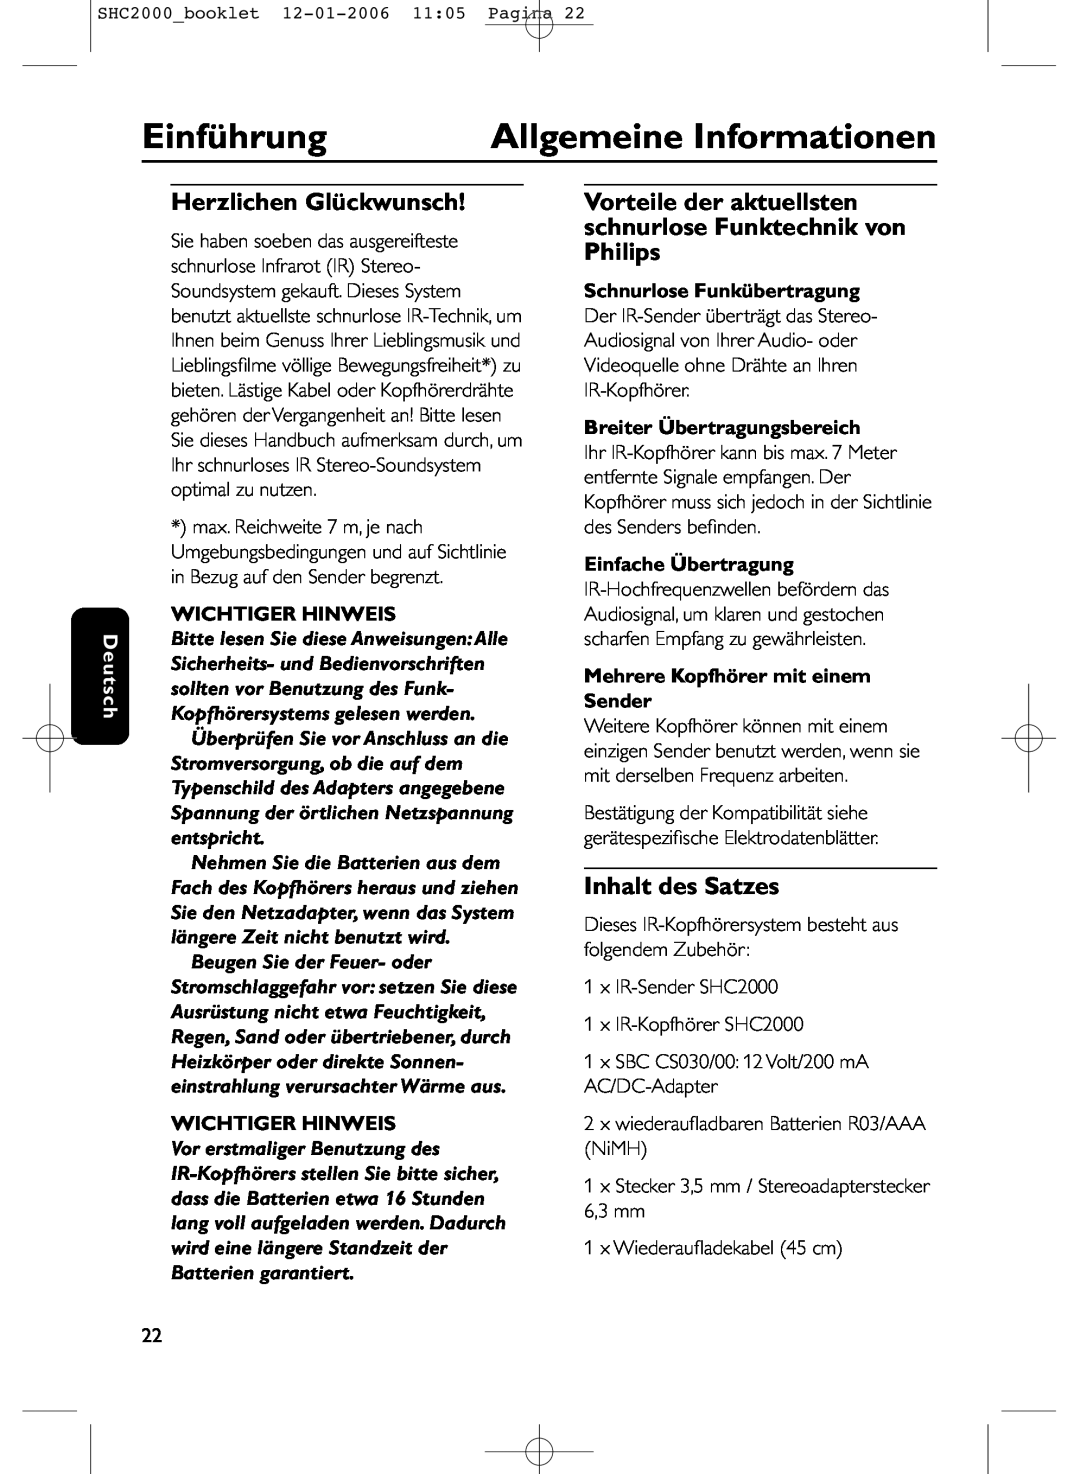 Philips SHC2000 manual Einführung, Allgemeine Informationen, Herzlichen Glückwunsch, Inhalt des Satzes, Deutsch 